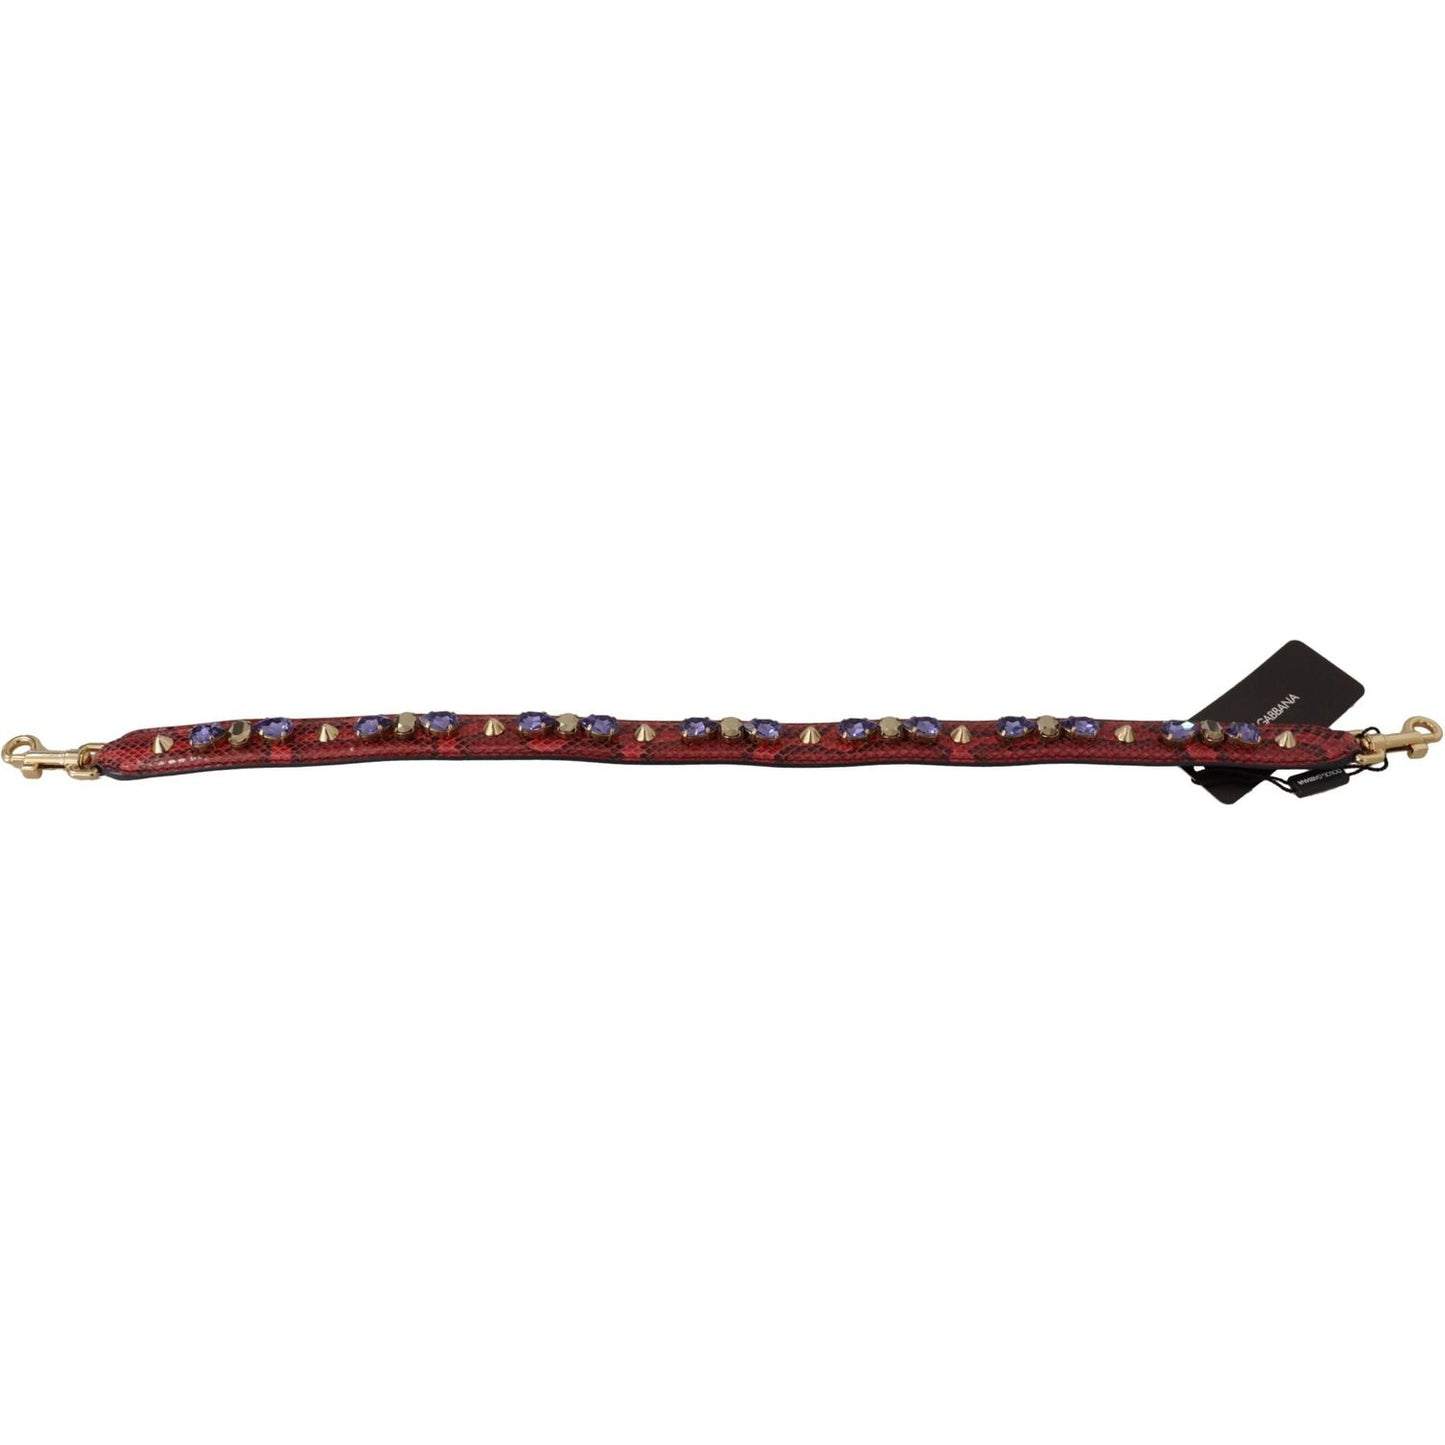 Dolce & Gabbana Elegant Red Python Leather Handbag Strap red-exotic-leather-crystals-bag-shoulder-strap-1 IMG_9687-scaled-7f588530-1cd.jpg